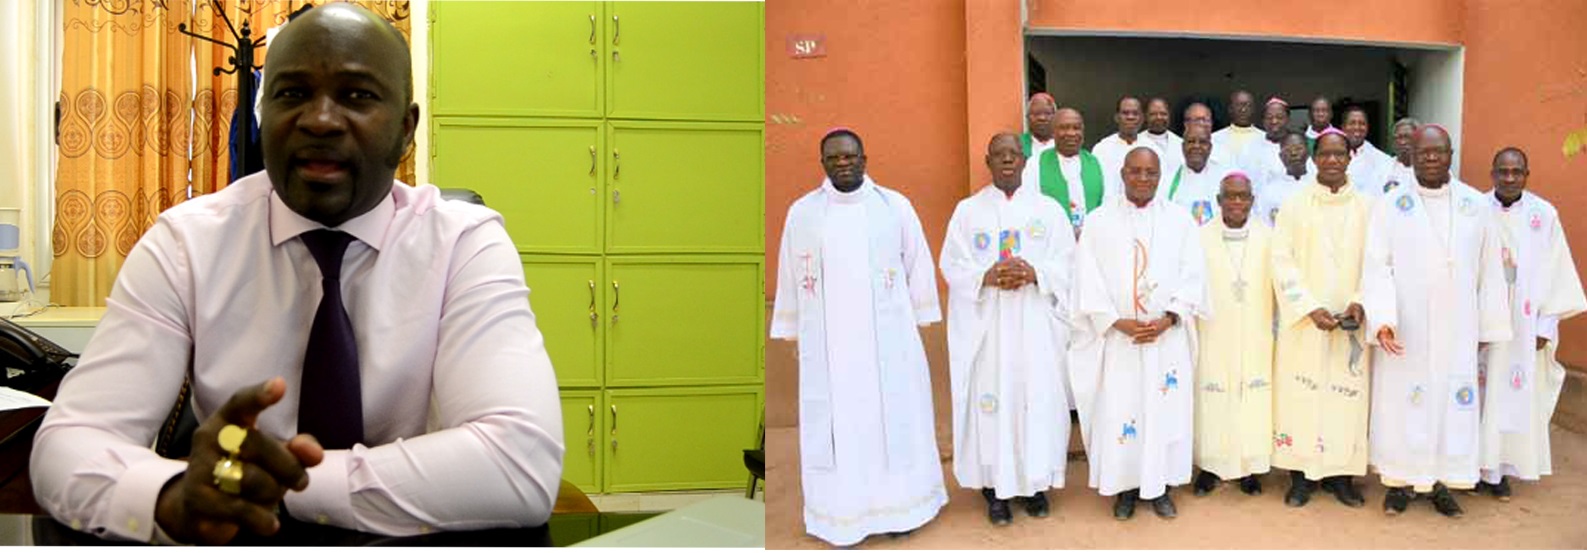 Le ministre et l’évêque : La chose publique et la chose de Dieu au Burkina Faso 